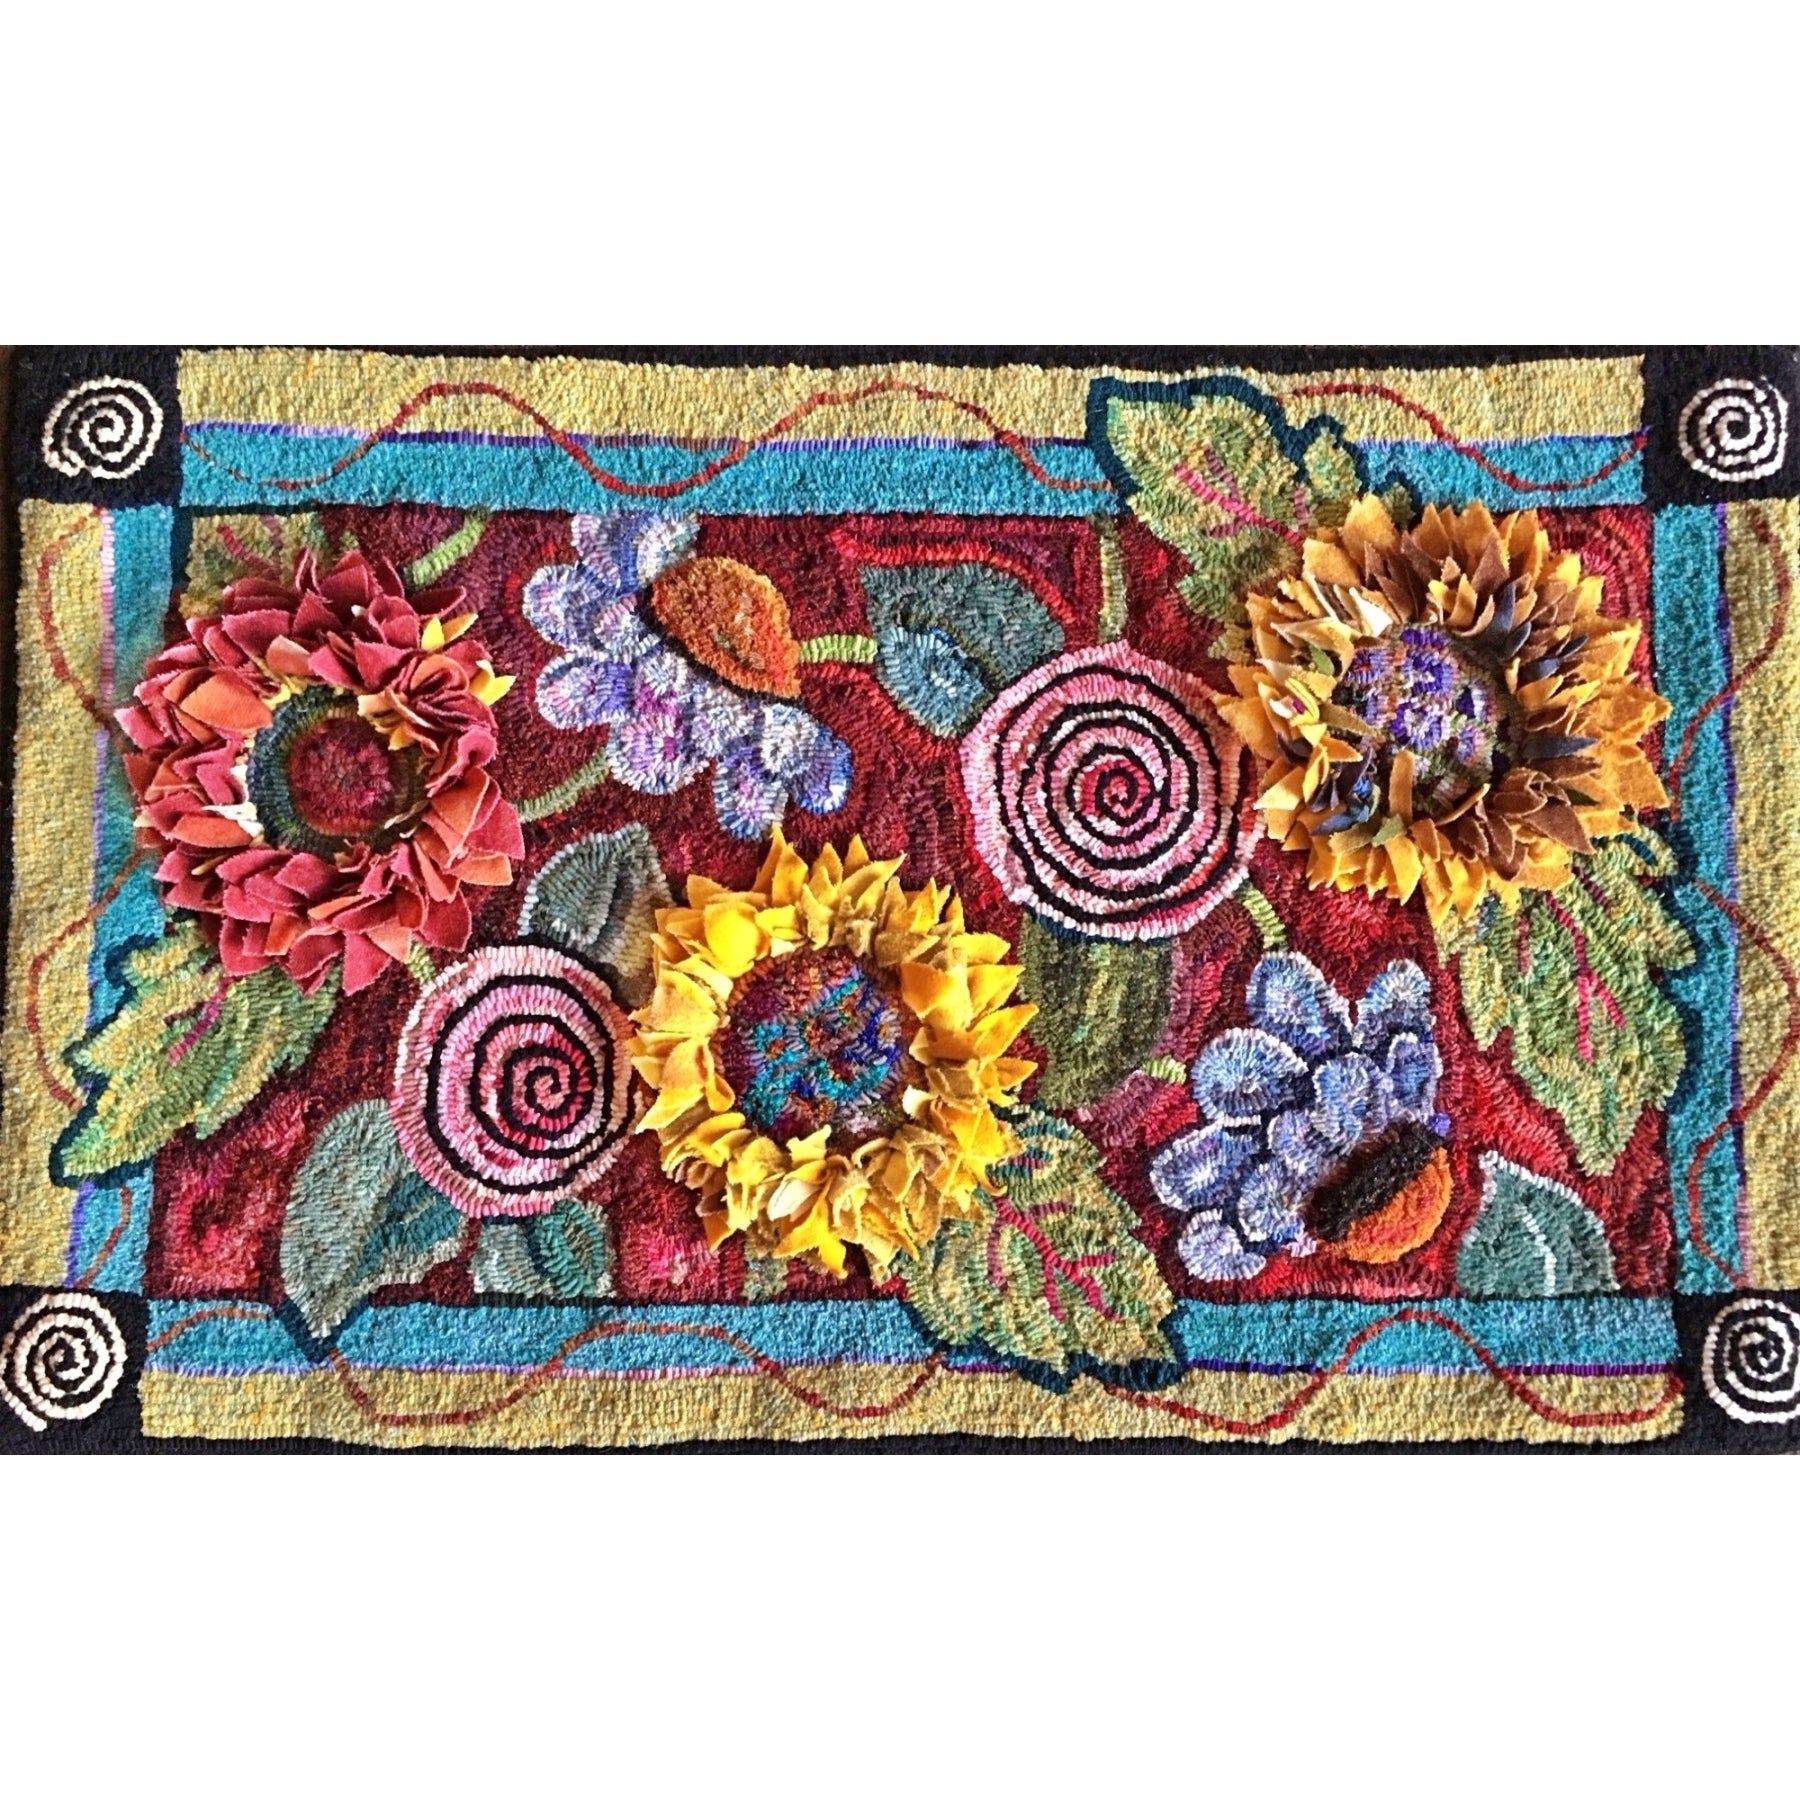 Stephanie's Garden, rug hooked by Valerie Begeman